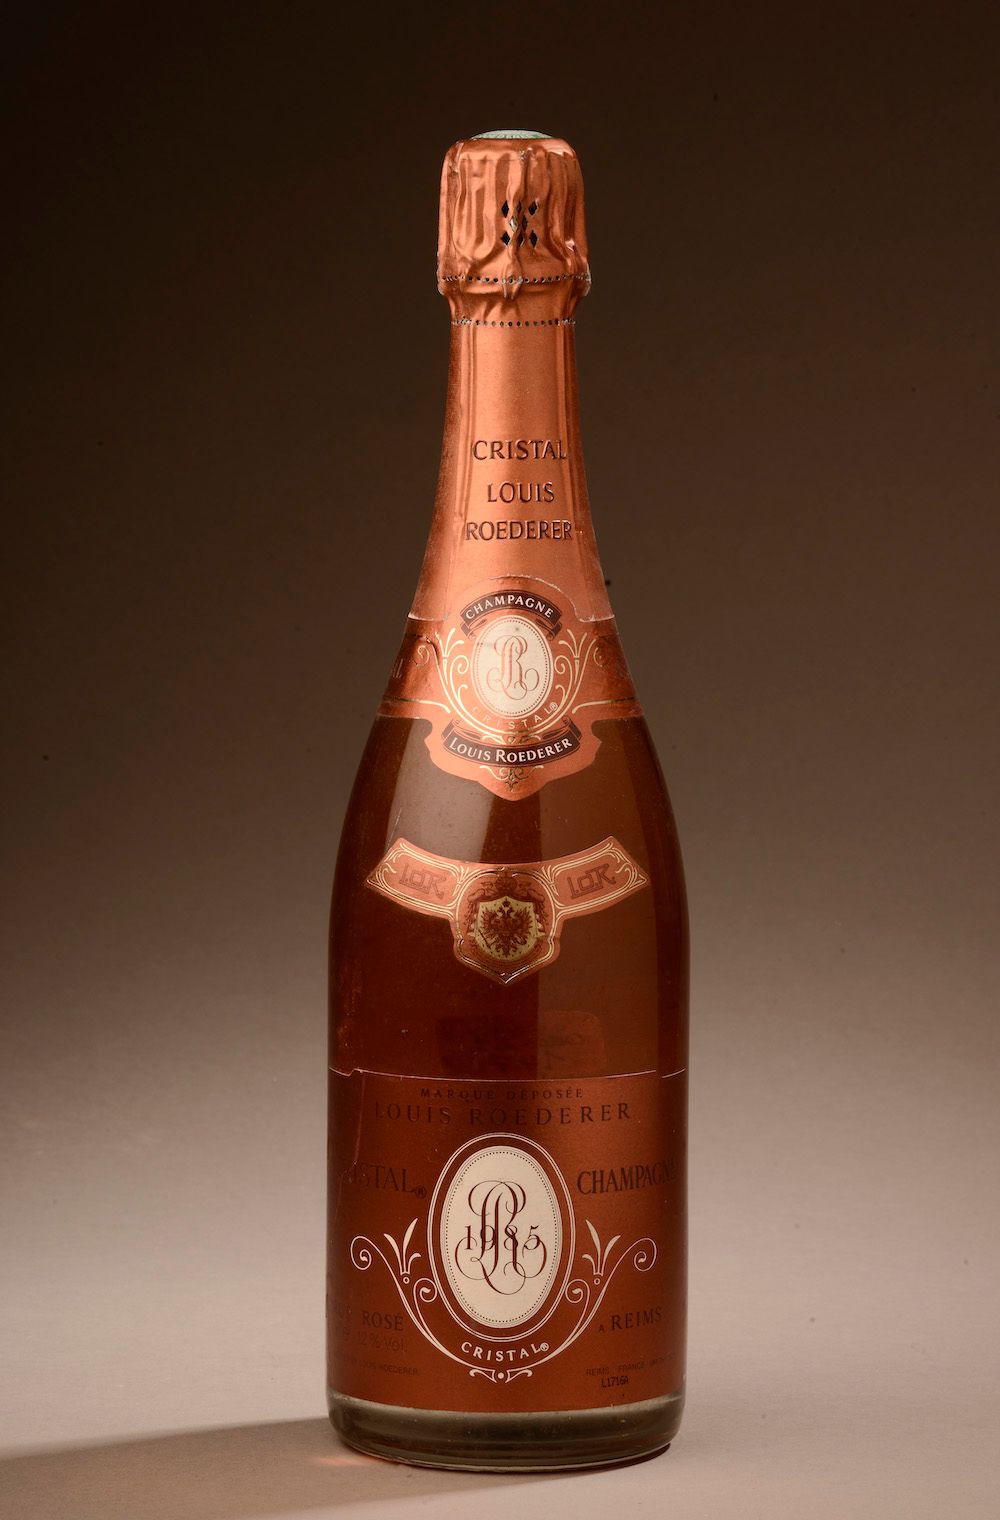 Null 1 bottle CHAMPAGNE "Cristal", L. Roederer 1985 (rosé)